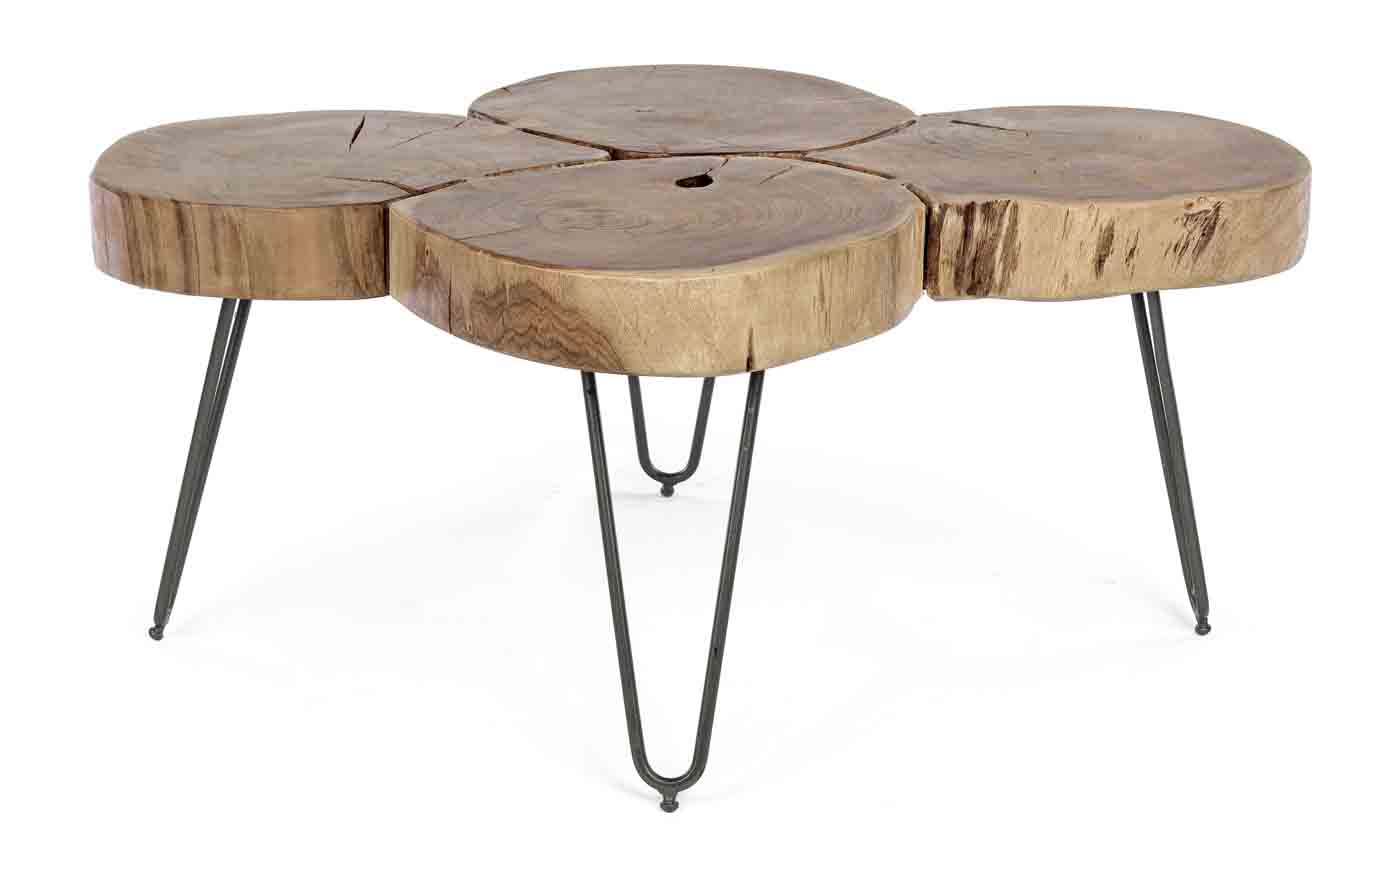 Der Couchtisch Orbital wurde aus original Teilen von Akazienholz gefertigt, dies verleiht dem Tisch seinen ganz eigen Look. Außerdem ist durch die Verwendung von Naturprodukten jeder Tisch ein Unikat.